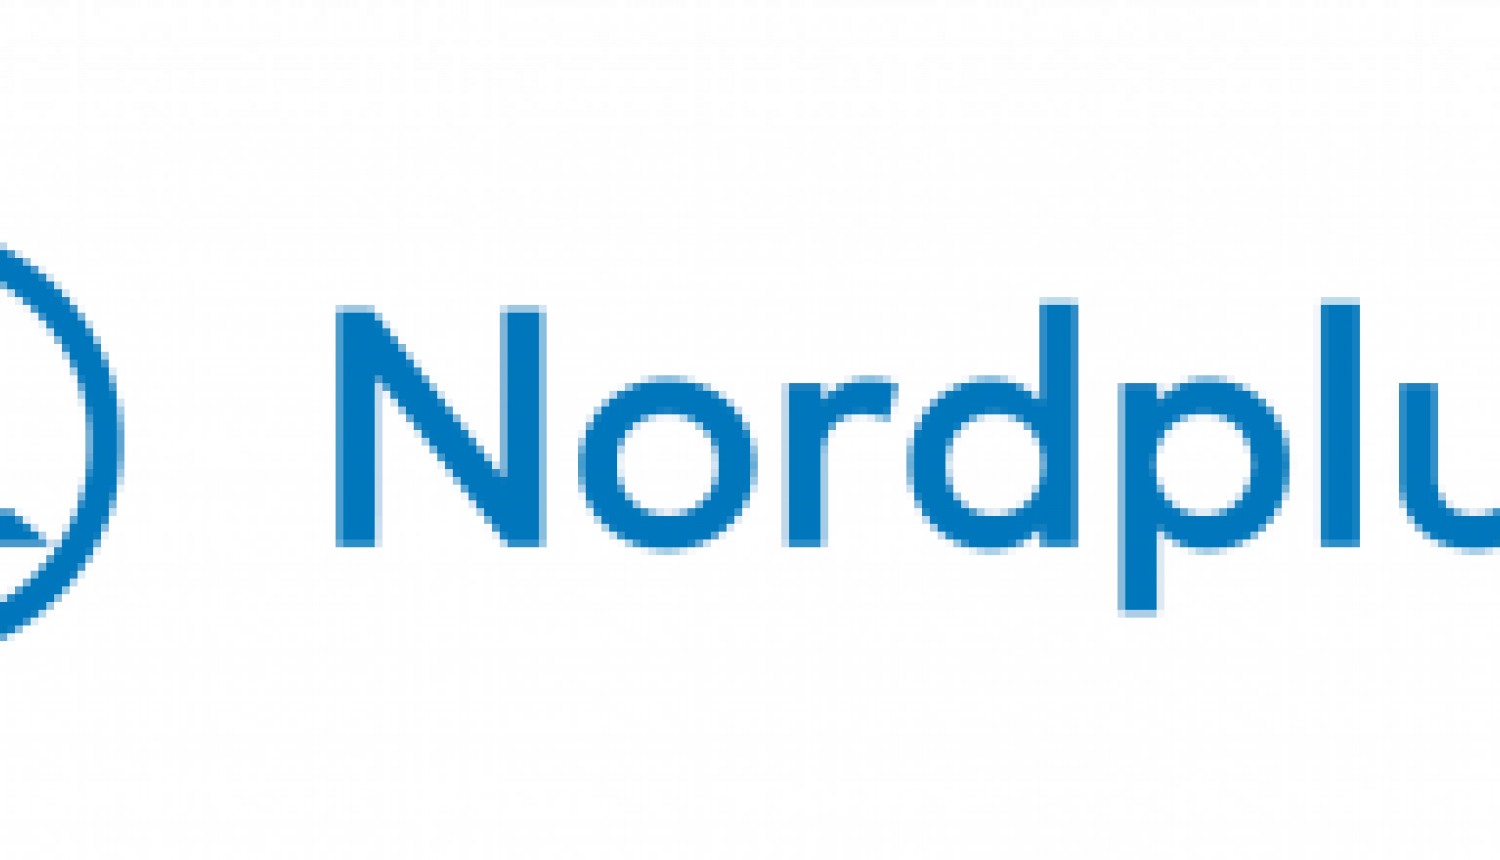 Turpinās pieteikumu iesniegšana Nordplus programmas 2018. gada projektu konkursā